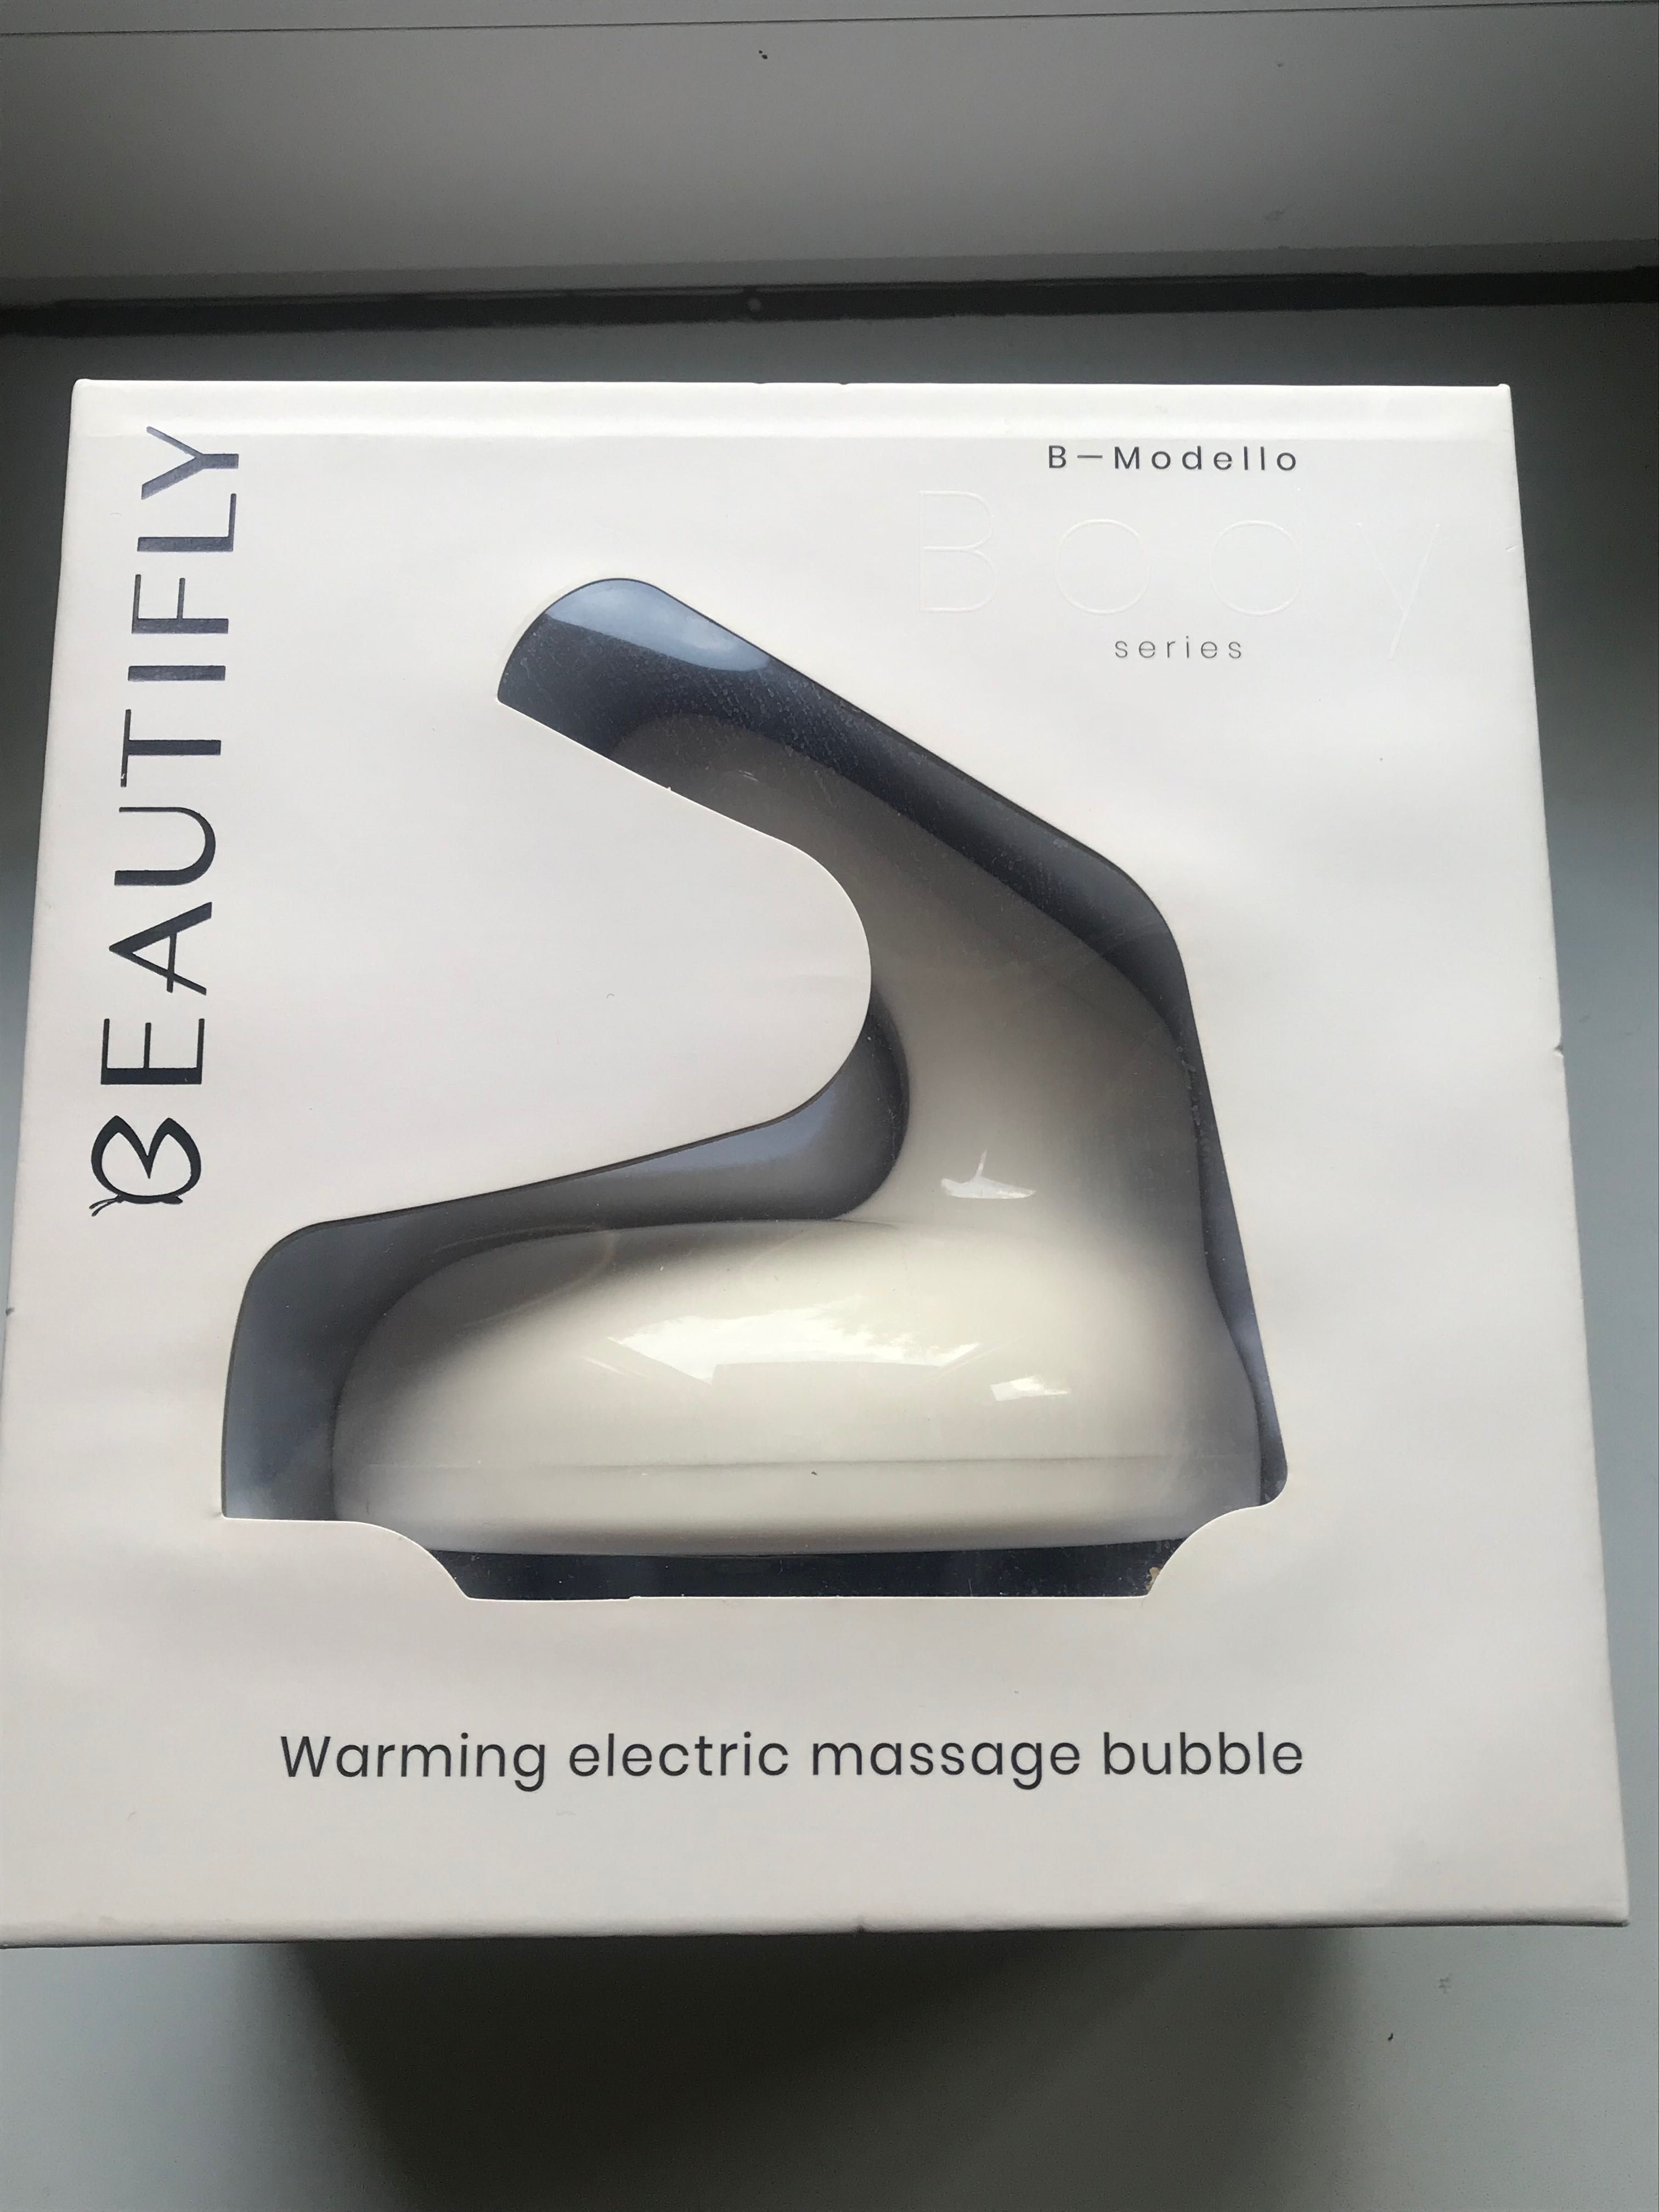 Bańka elektryczna do masażu B-modello z Body series